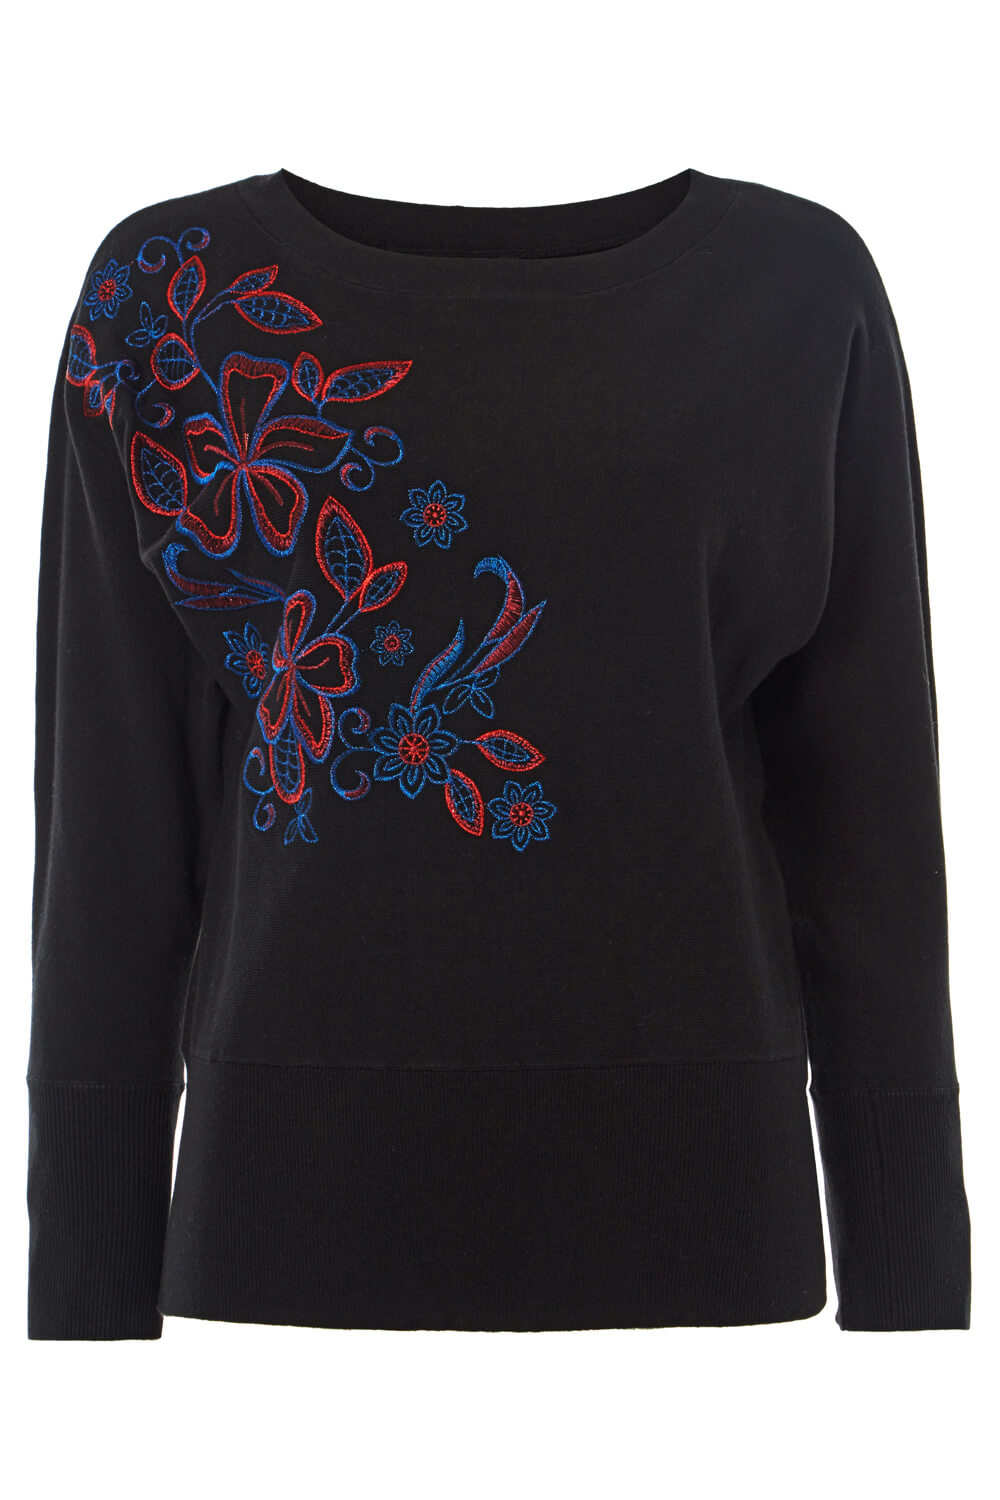 Black Floral Embroidered Jumper , Image 5 of 5